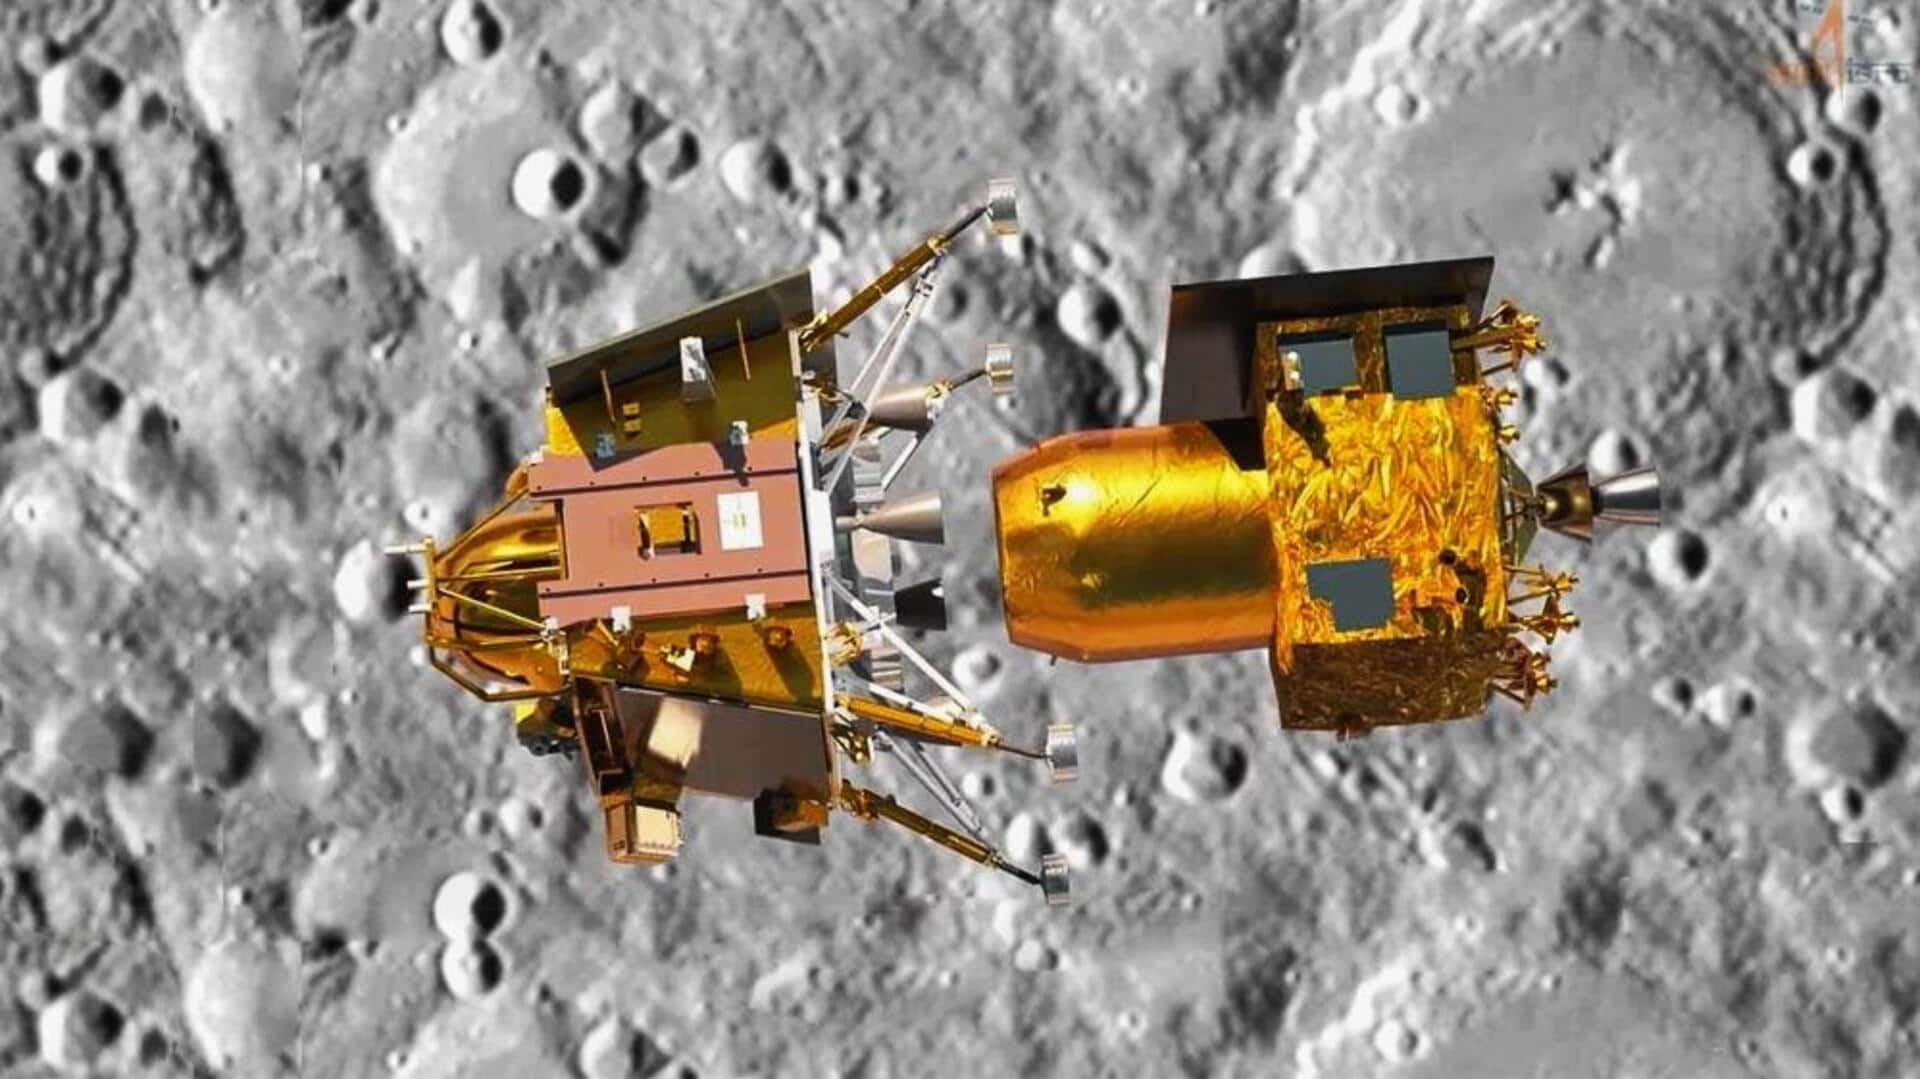 चंद्रयान-3 का लैंडर विक्रम सफलतापूर्वक अंतरिक्ष यान से अलग हुआ, सॉफ्ट लैंडिंग के और करीब पहुंचा